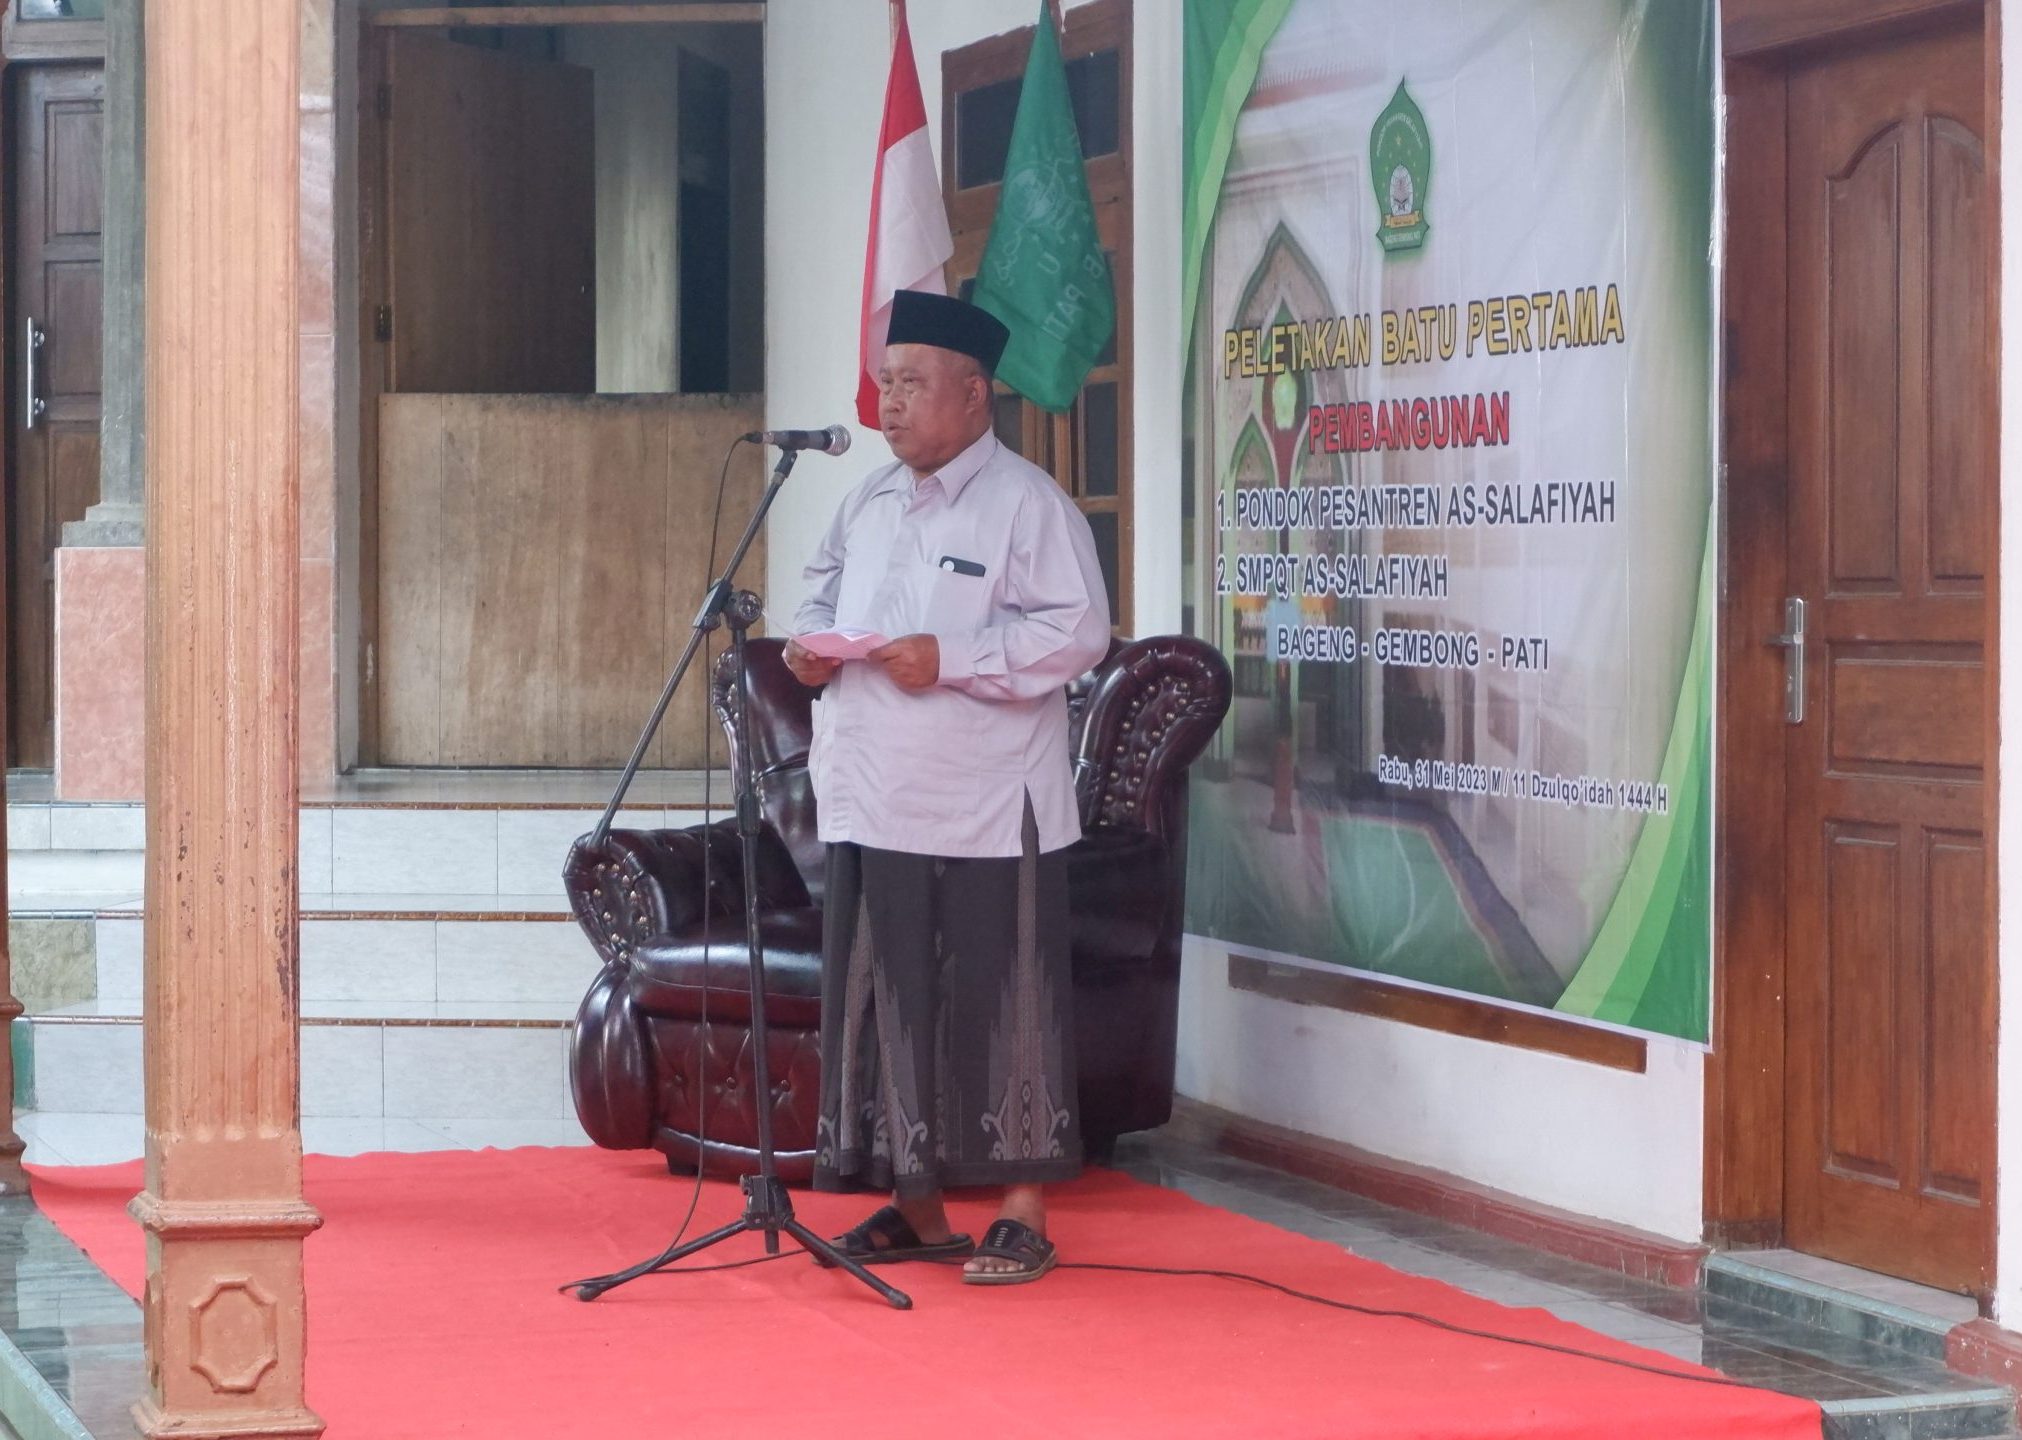 KH Rusydi Achmadi Memberi Sambutan Bersejarah dalam Acara Peletakan Batu Pertama